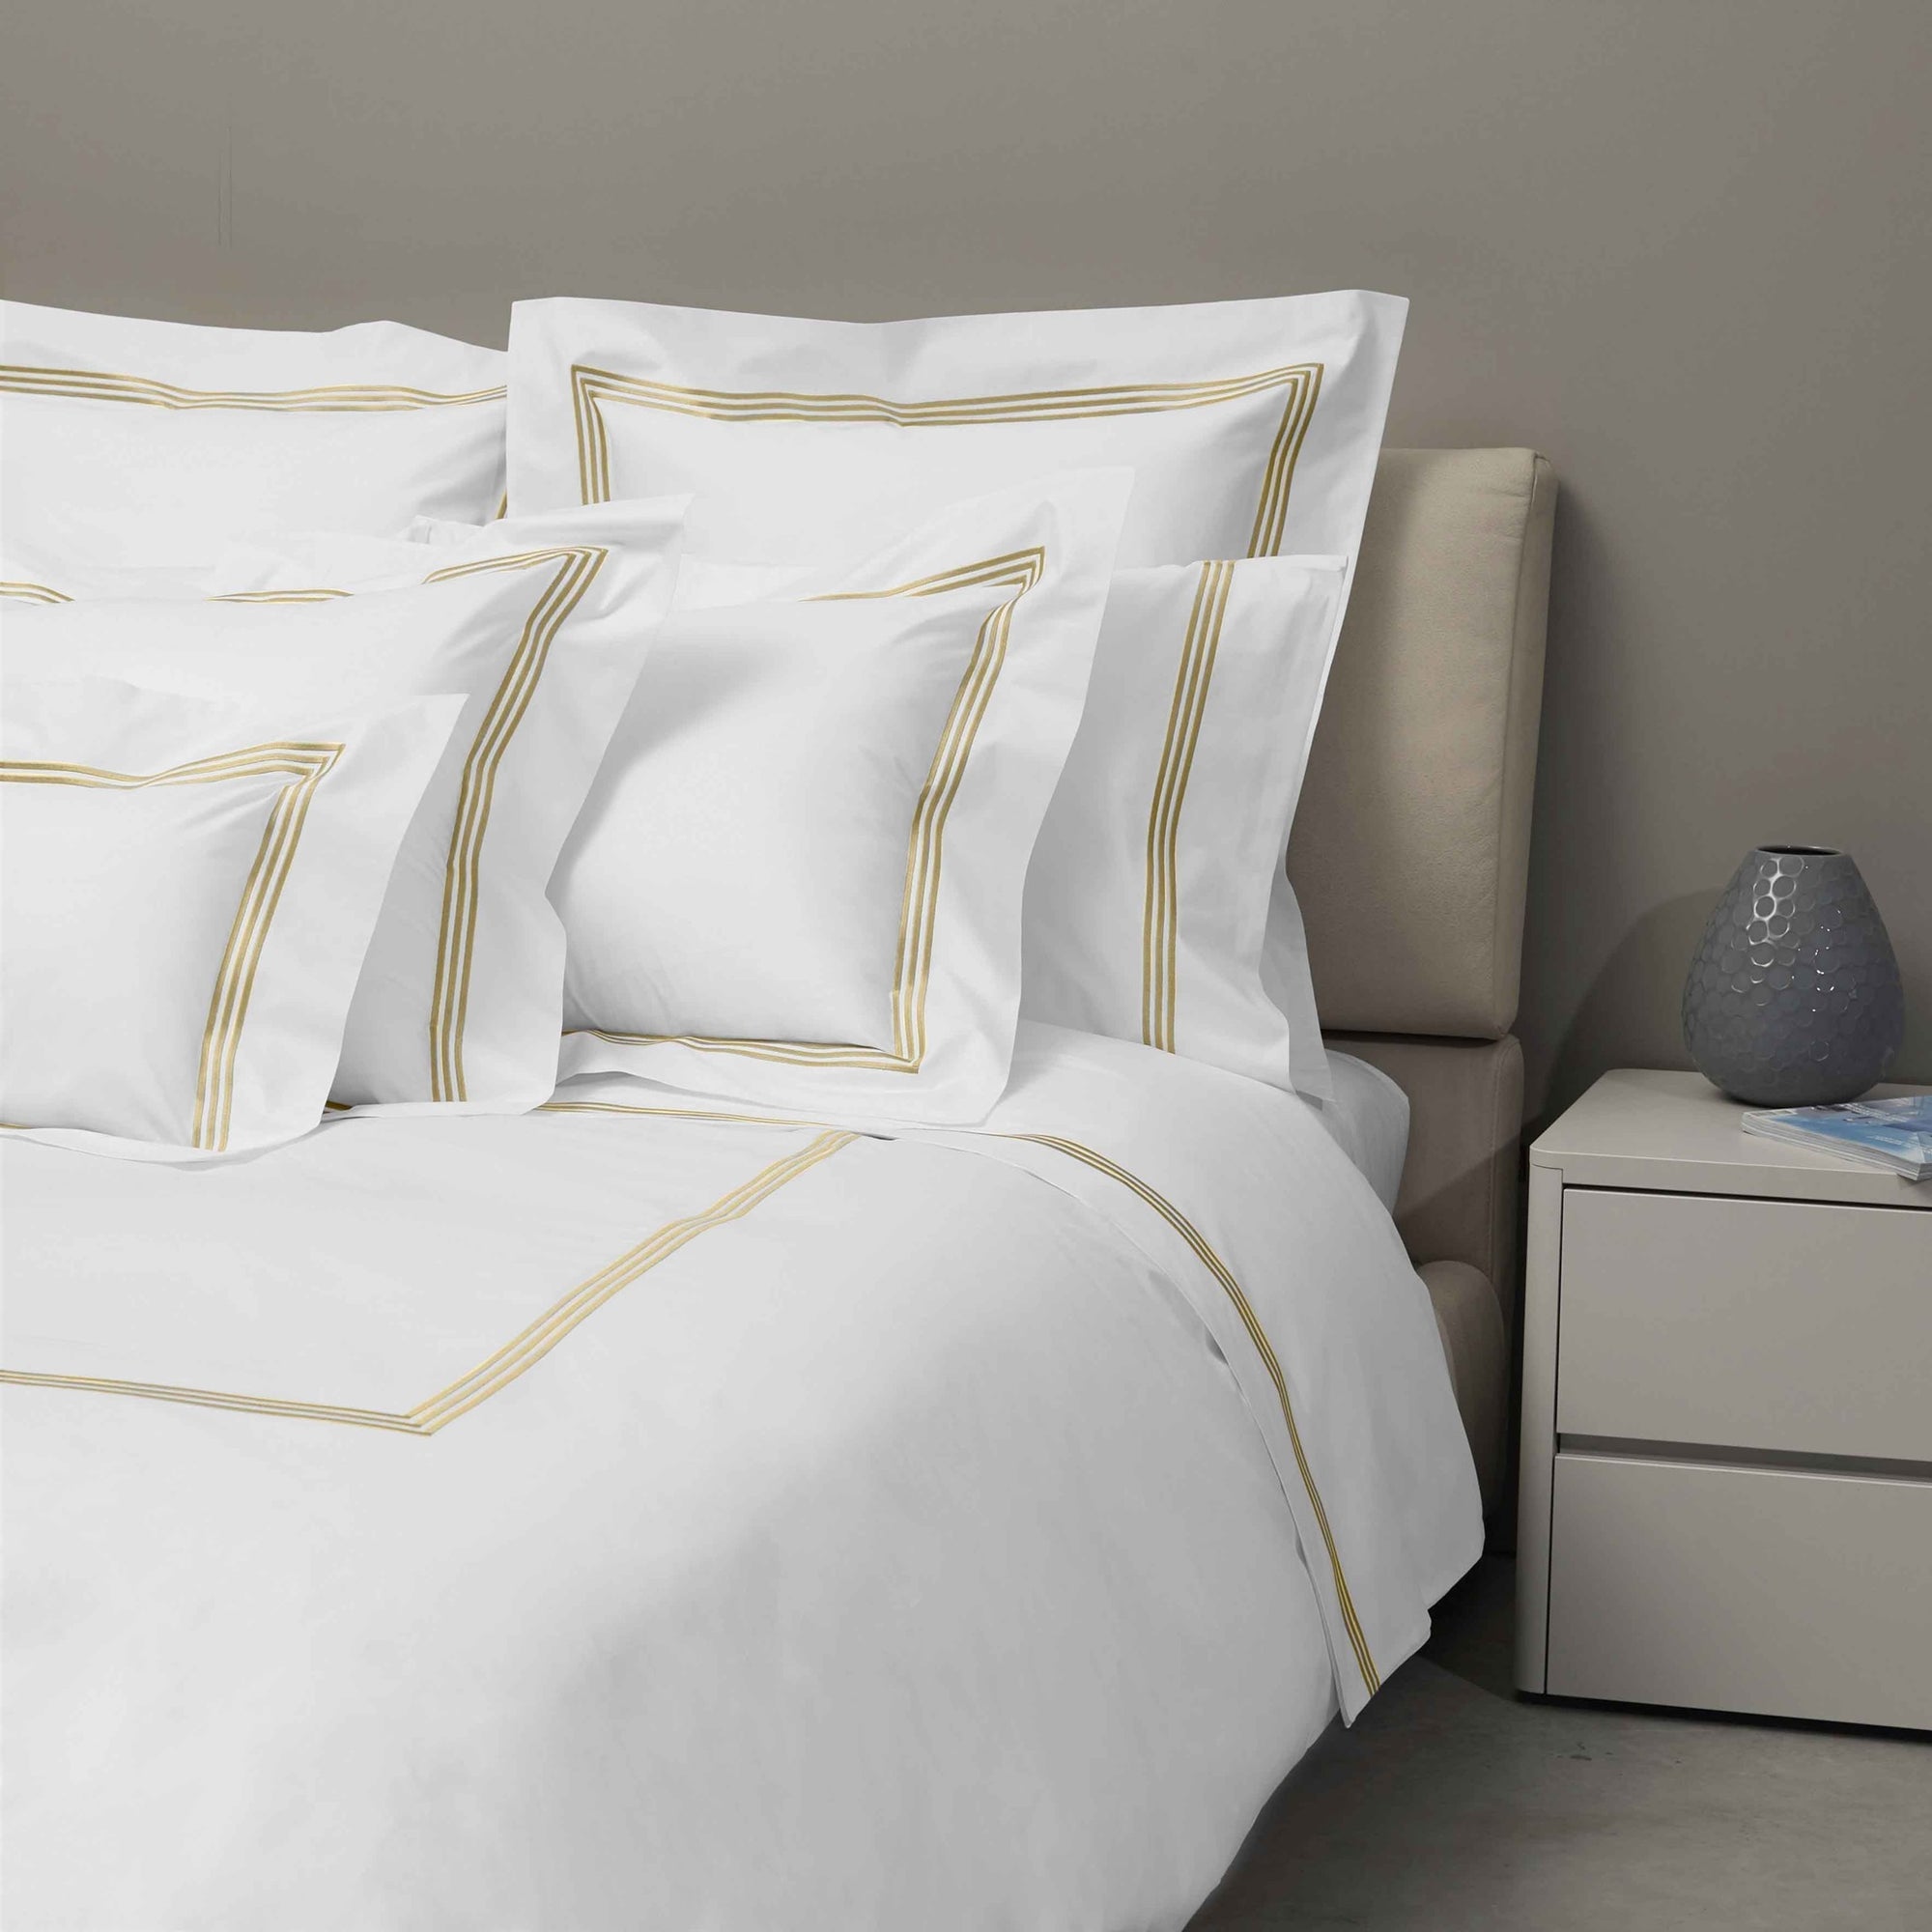 Bed Dressed in Signoria Platinum Percale Bedding in White/Caramel Color